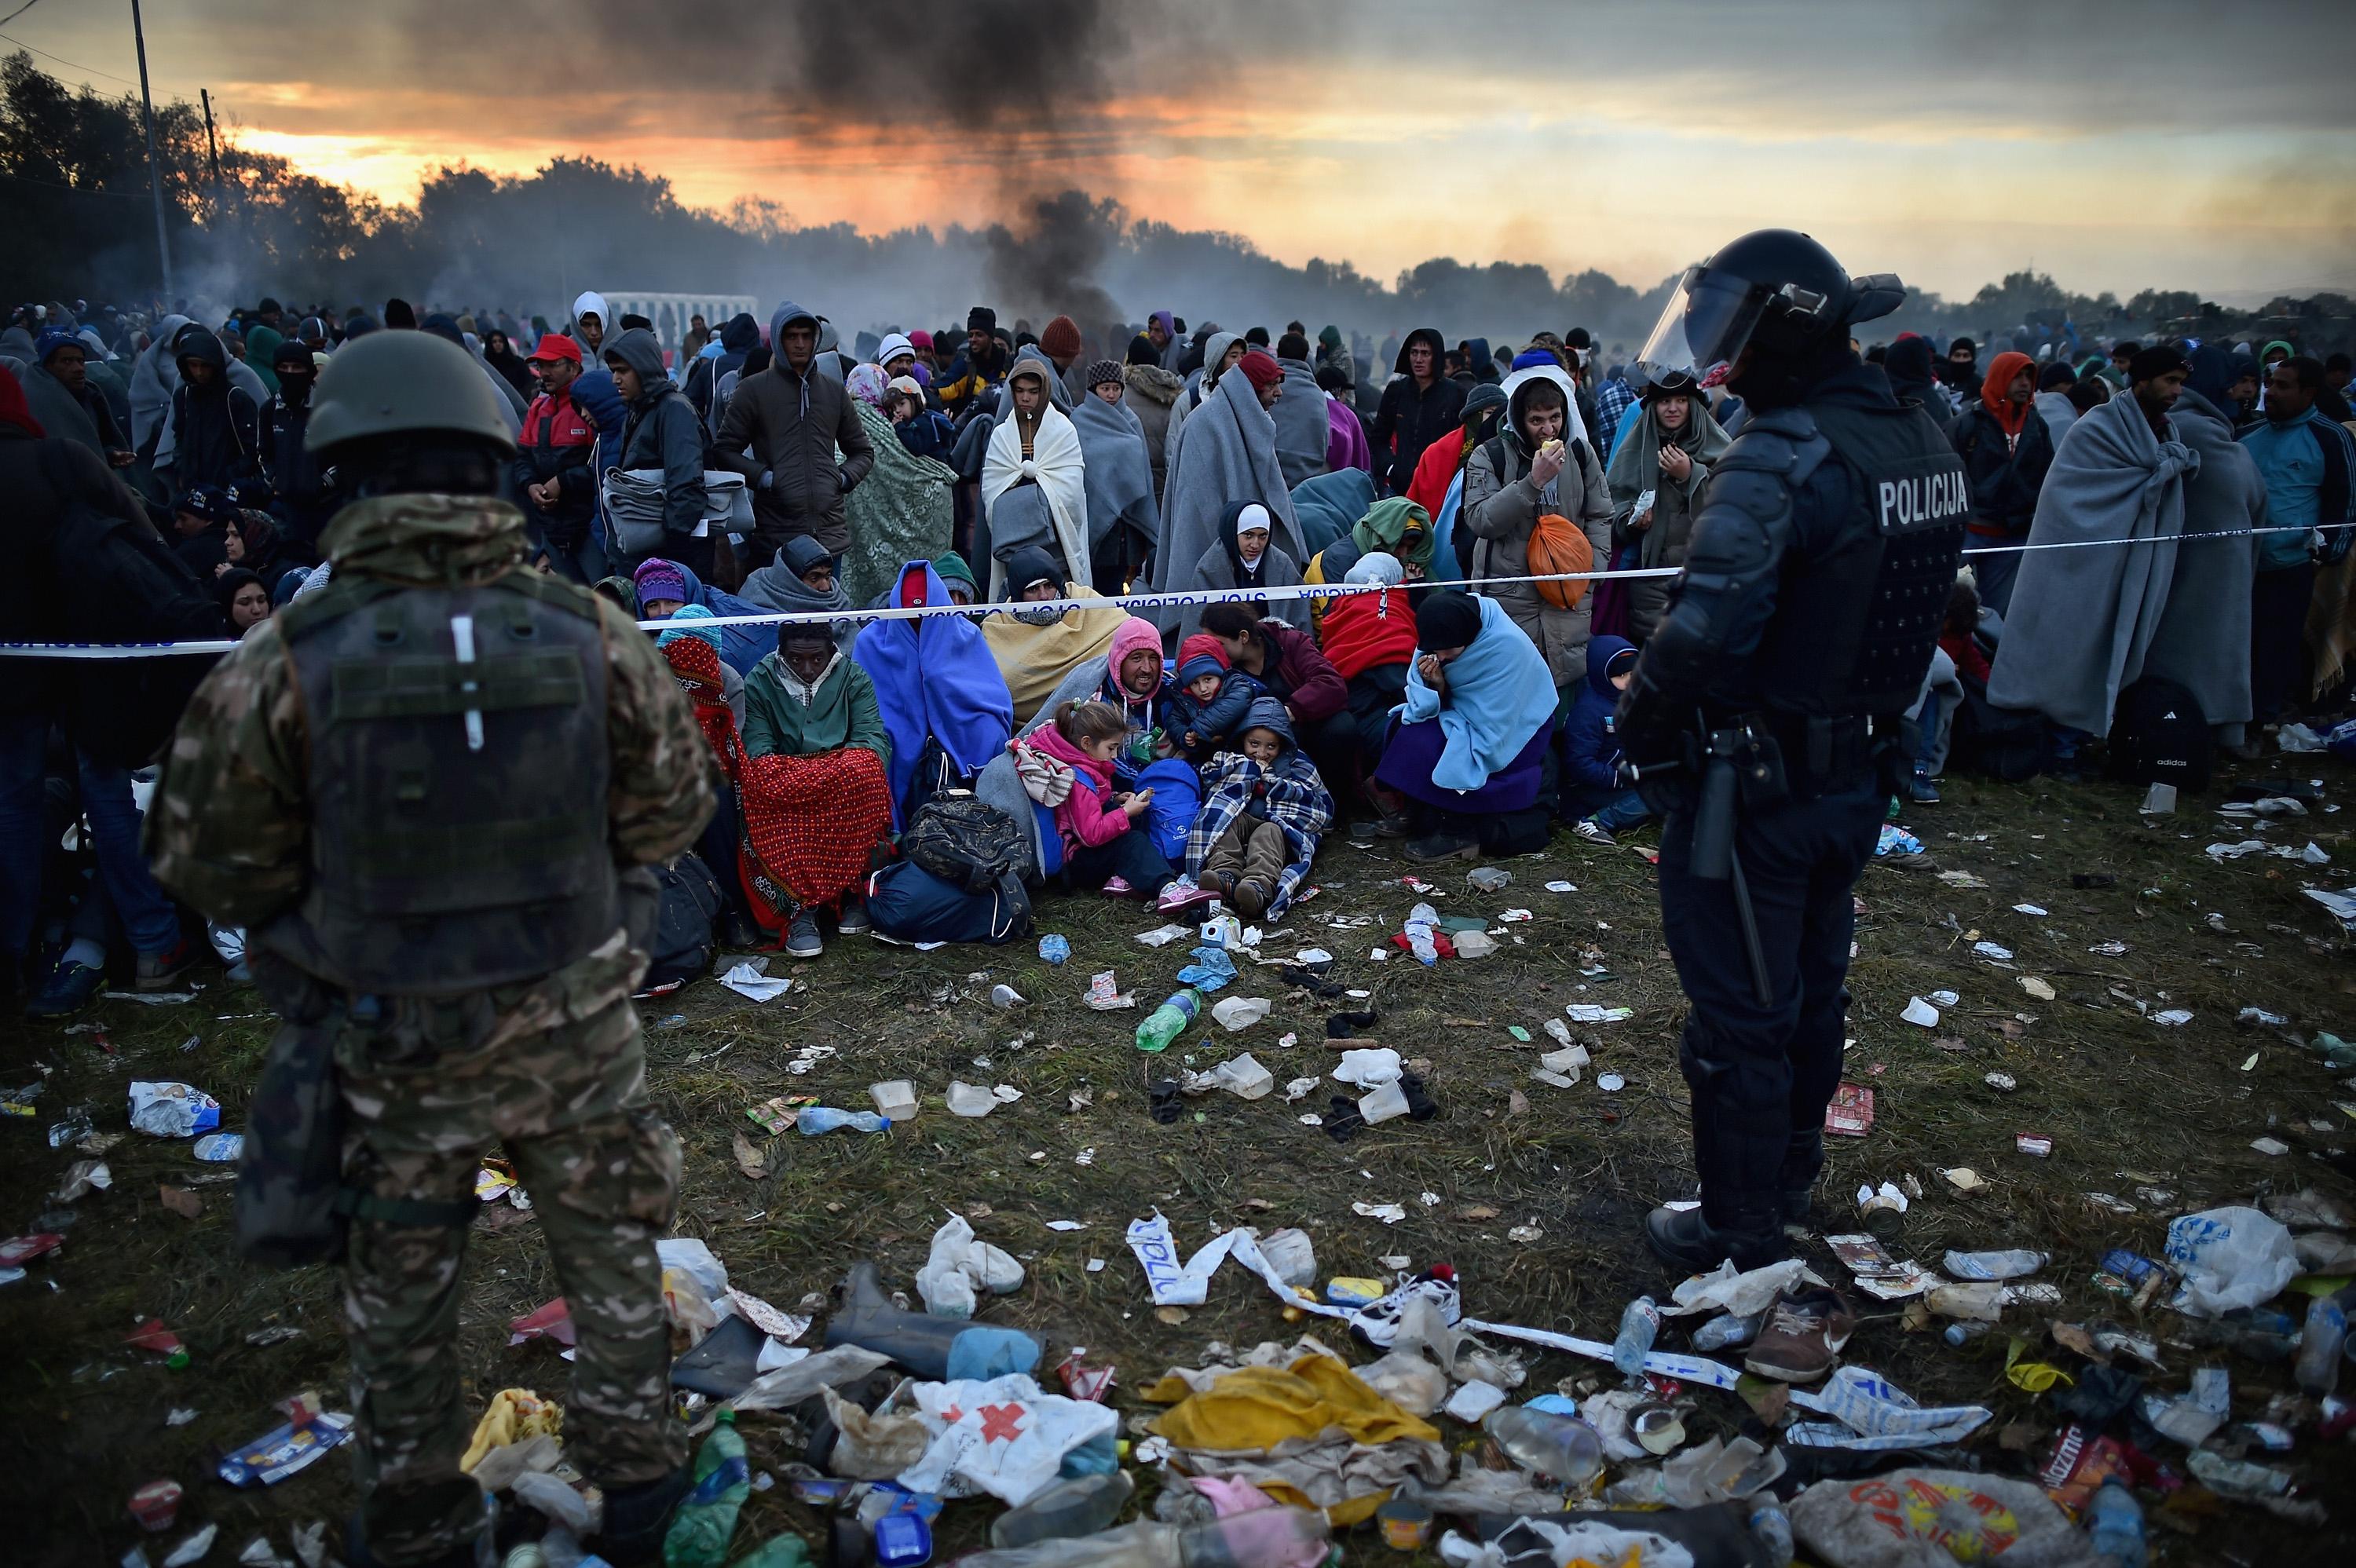 Vid ett extra EU-möte om flyktingkrisen på söndagskvällen kom man bland annat fram till att skärpa gränskontrollen, förbättra informationen och skaffa fler sängplatser längs flyktingruttten. (Foto: Jeff J Mitchell/Getty Image)